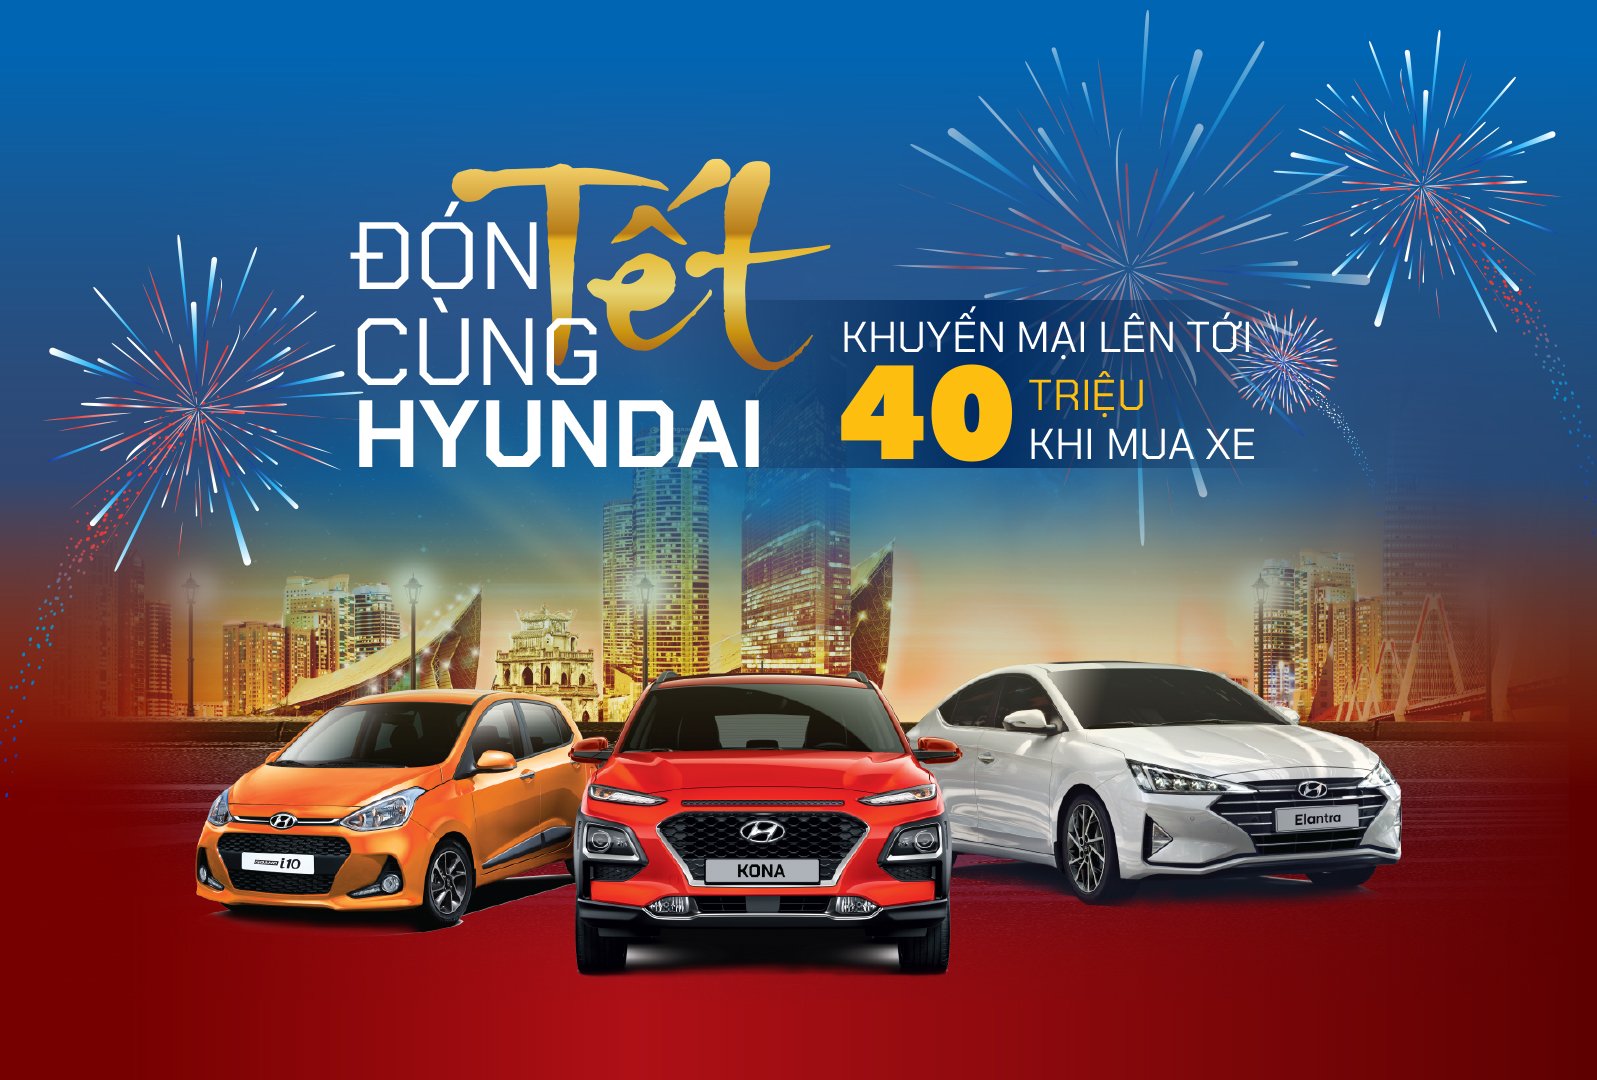 TC Motor tung khuyến mãi đến 40 triệu đồng cho khách mua xe Hyundai dịp cuối năm 1a